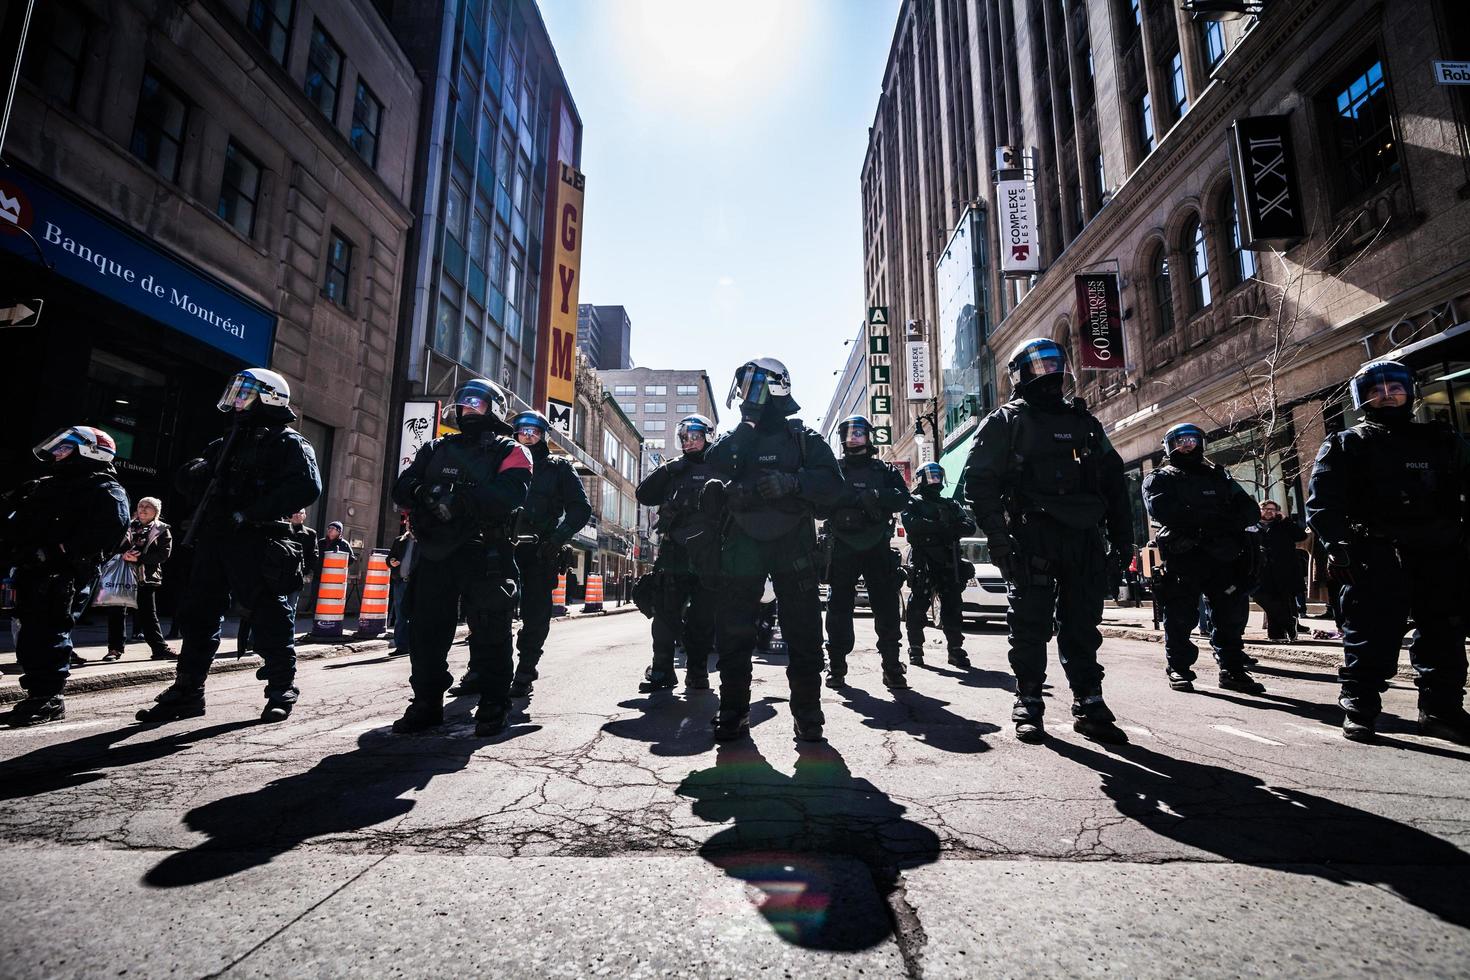 montreal, canadá 02 de abril de 2015 - grupo épico de policías listos para reaccionar en caso de problemas con los manifestantes. foto